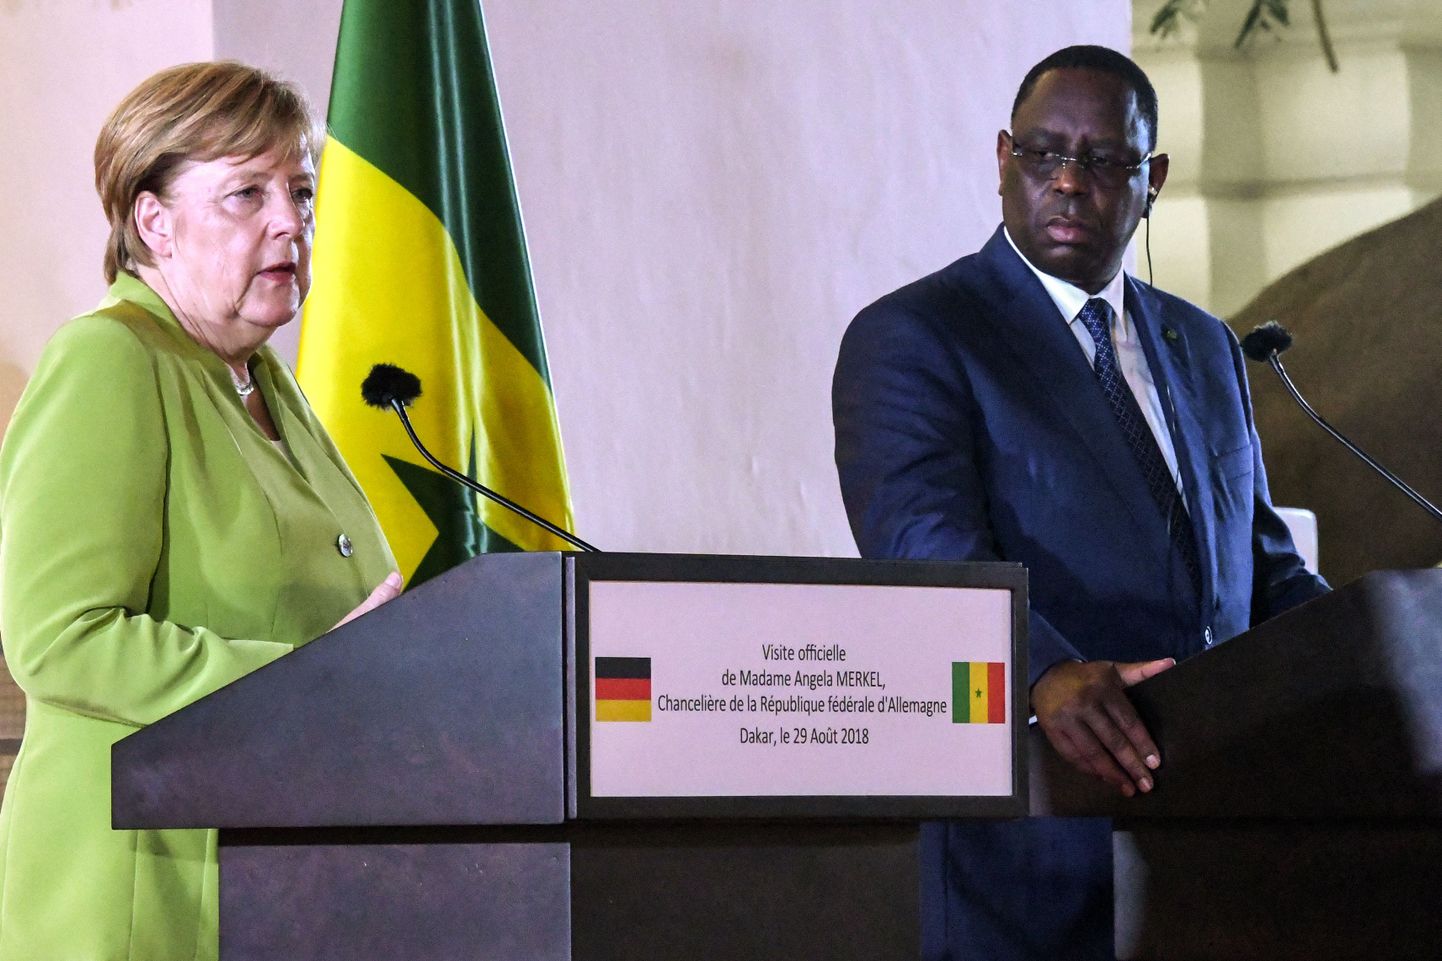 Saksa kantsler Angela Merkel ja Senegali president Macky Sall kolmapäeval Dakaris.